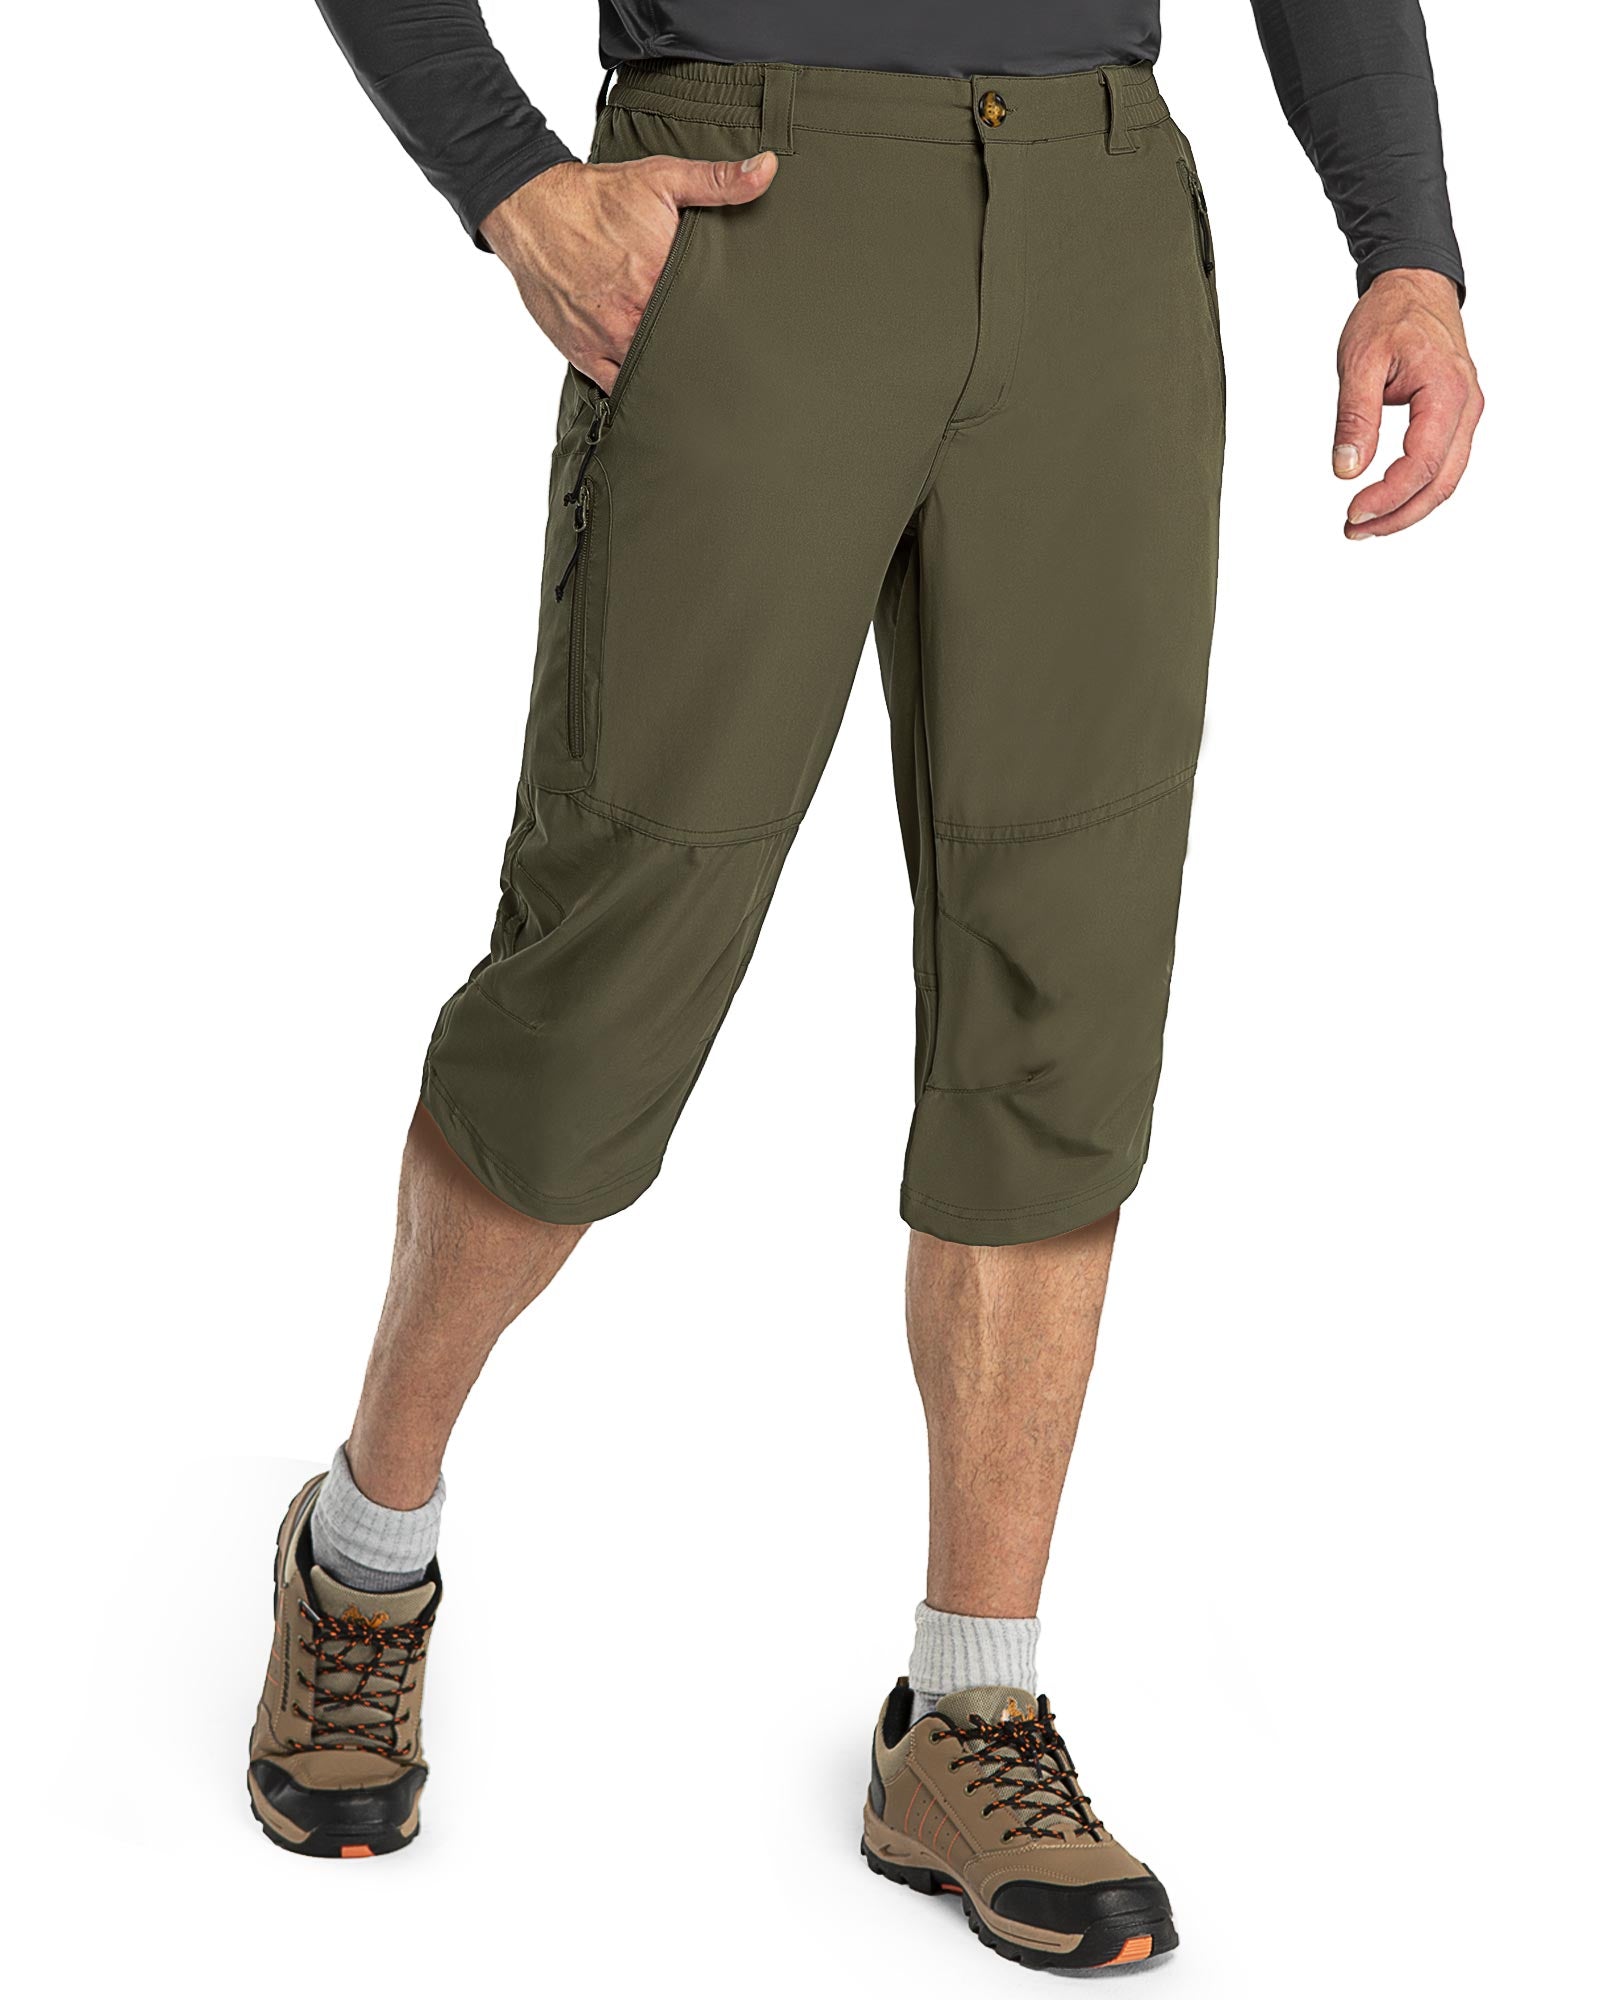 Mountain Hardwear Logan Canyon 3/4 Pant - Men's - Clothing